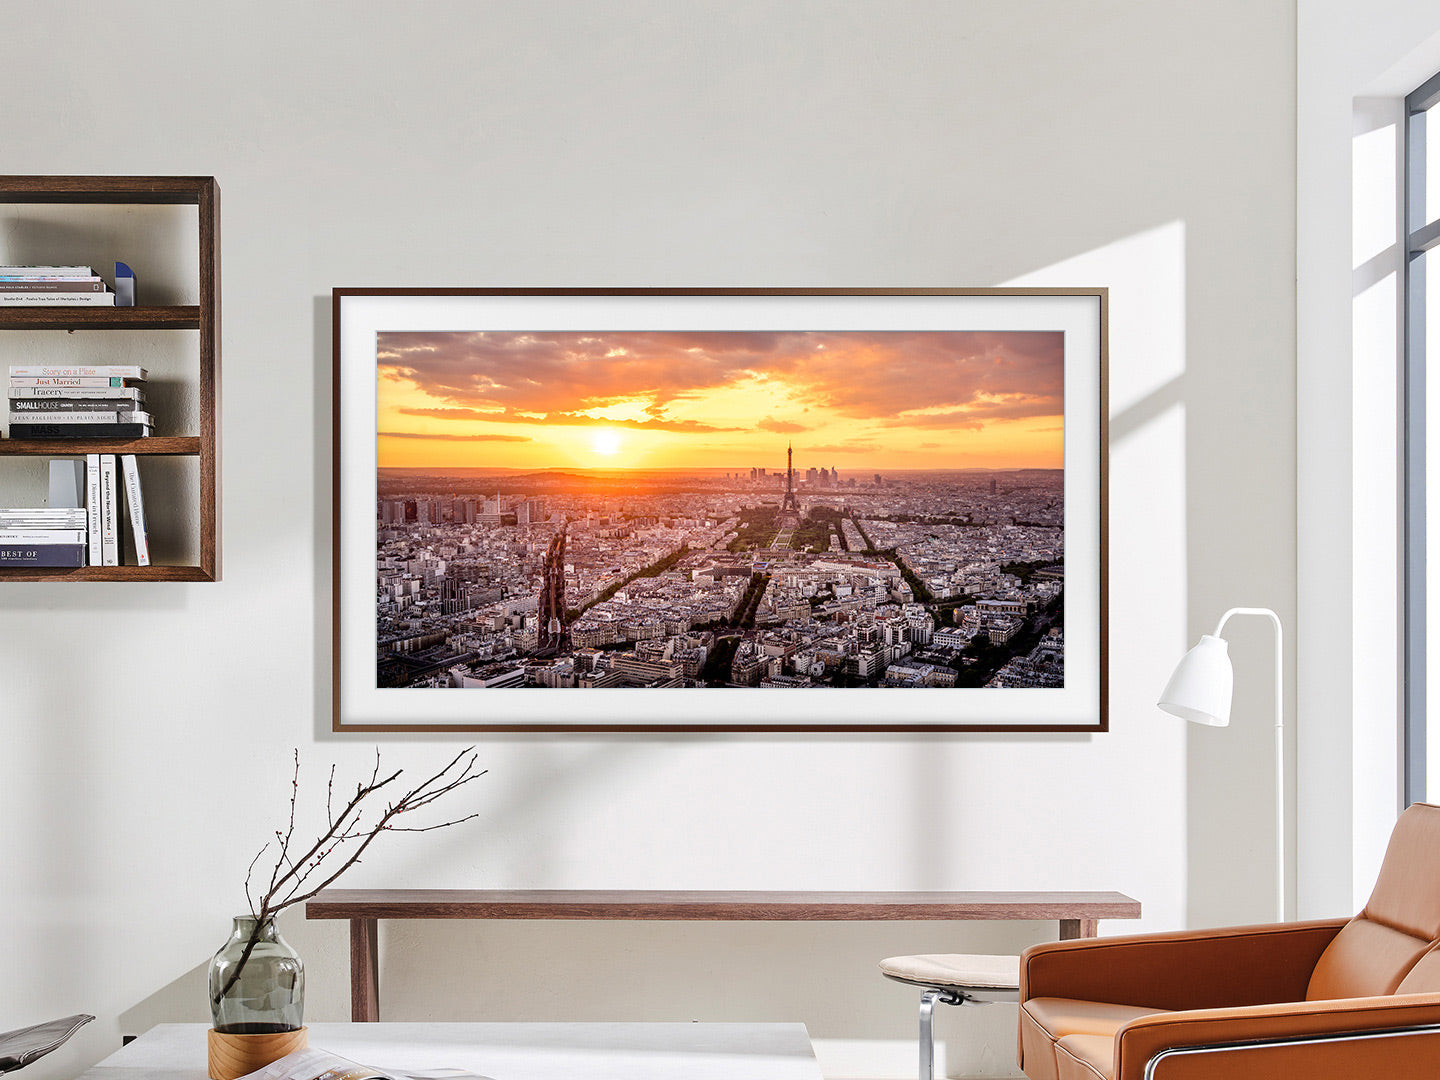 2023 Samsung The Frame 75 / QLED 4K Smart TV